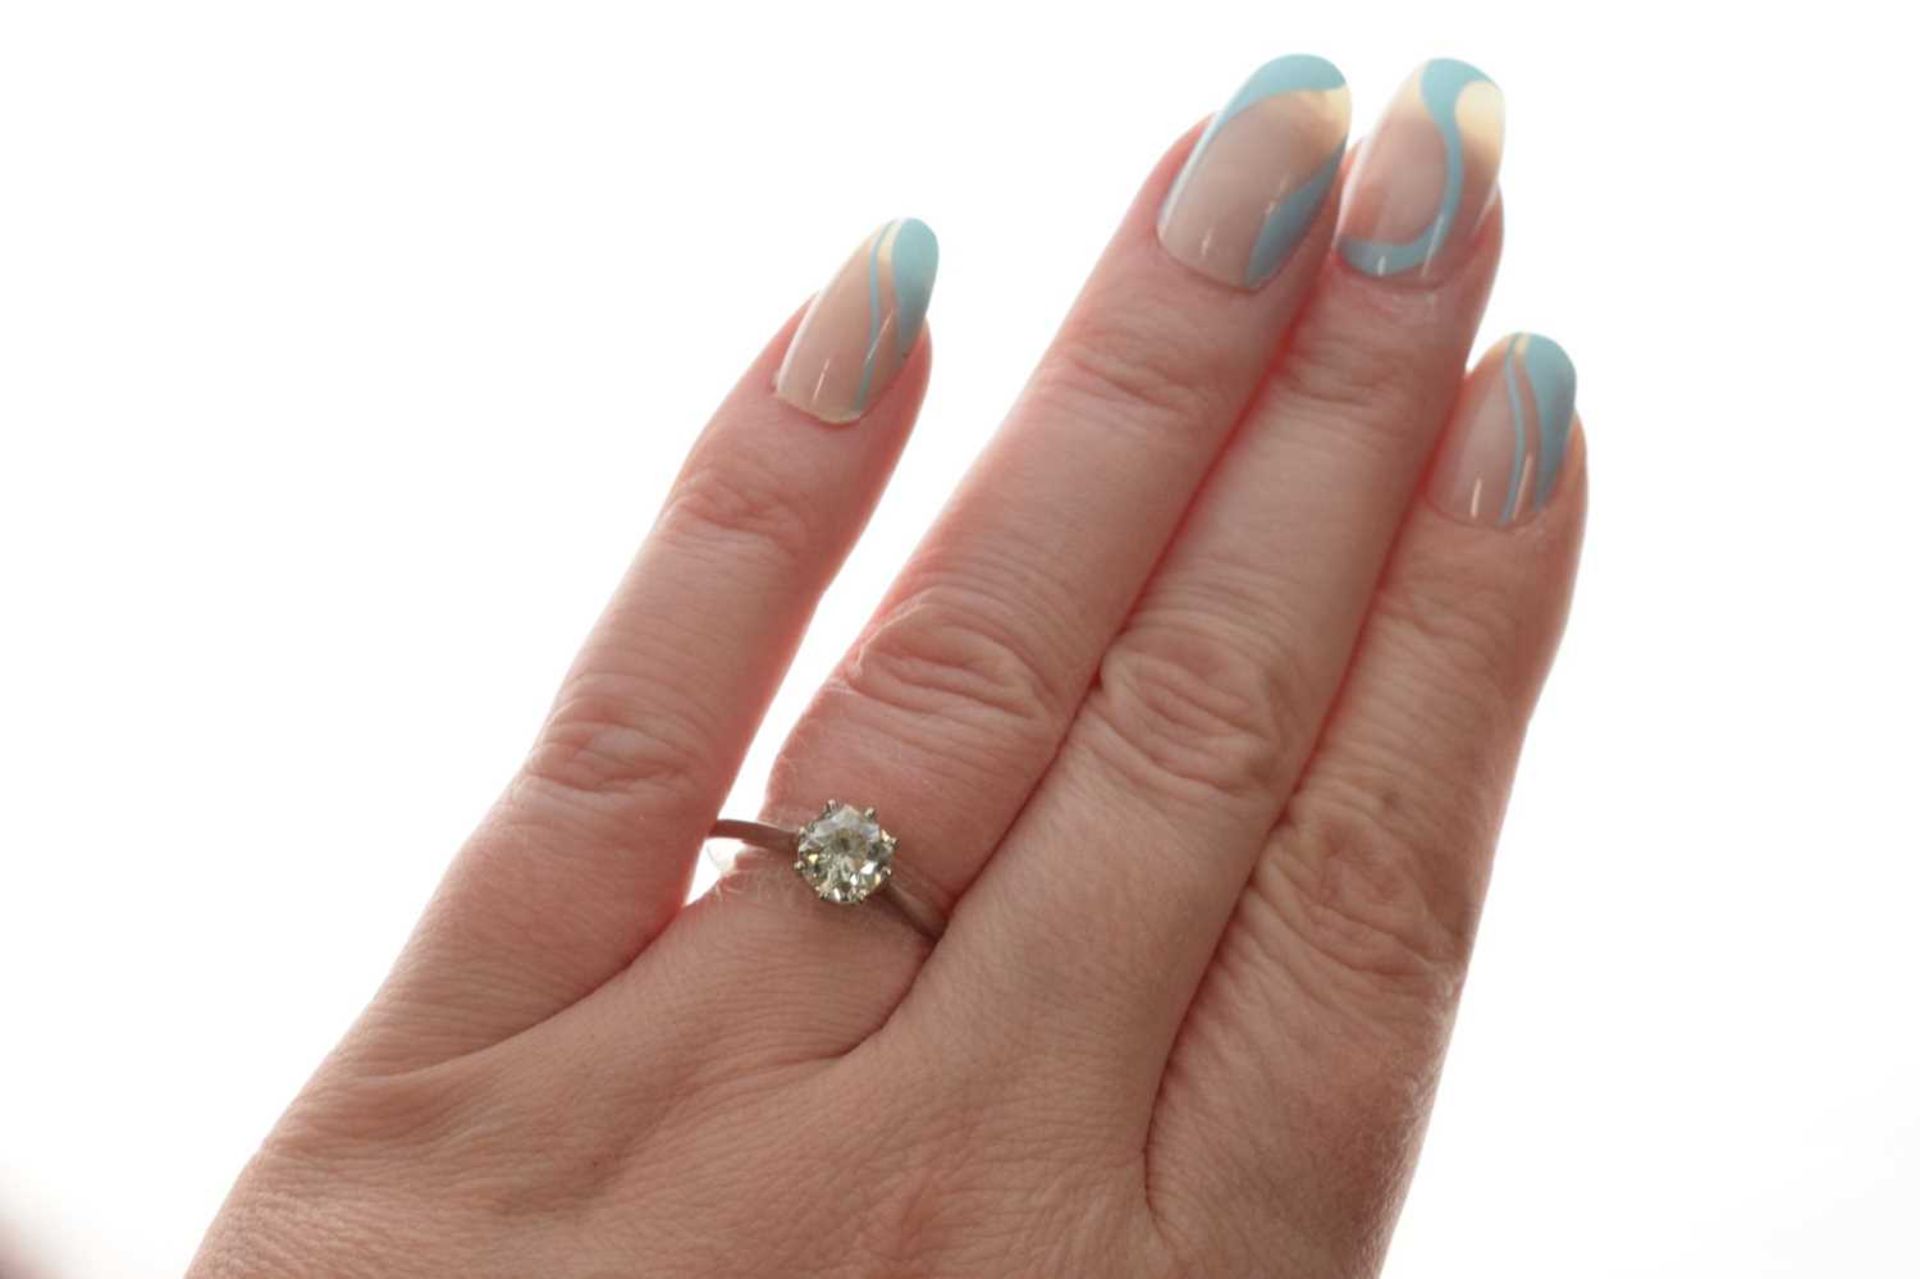 Diamond solitaire platinum ring - Image 7 of 7